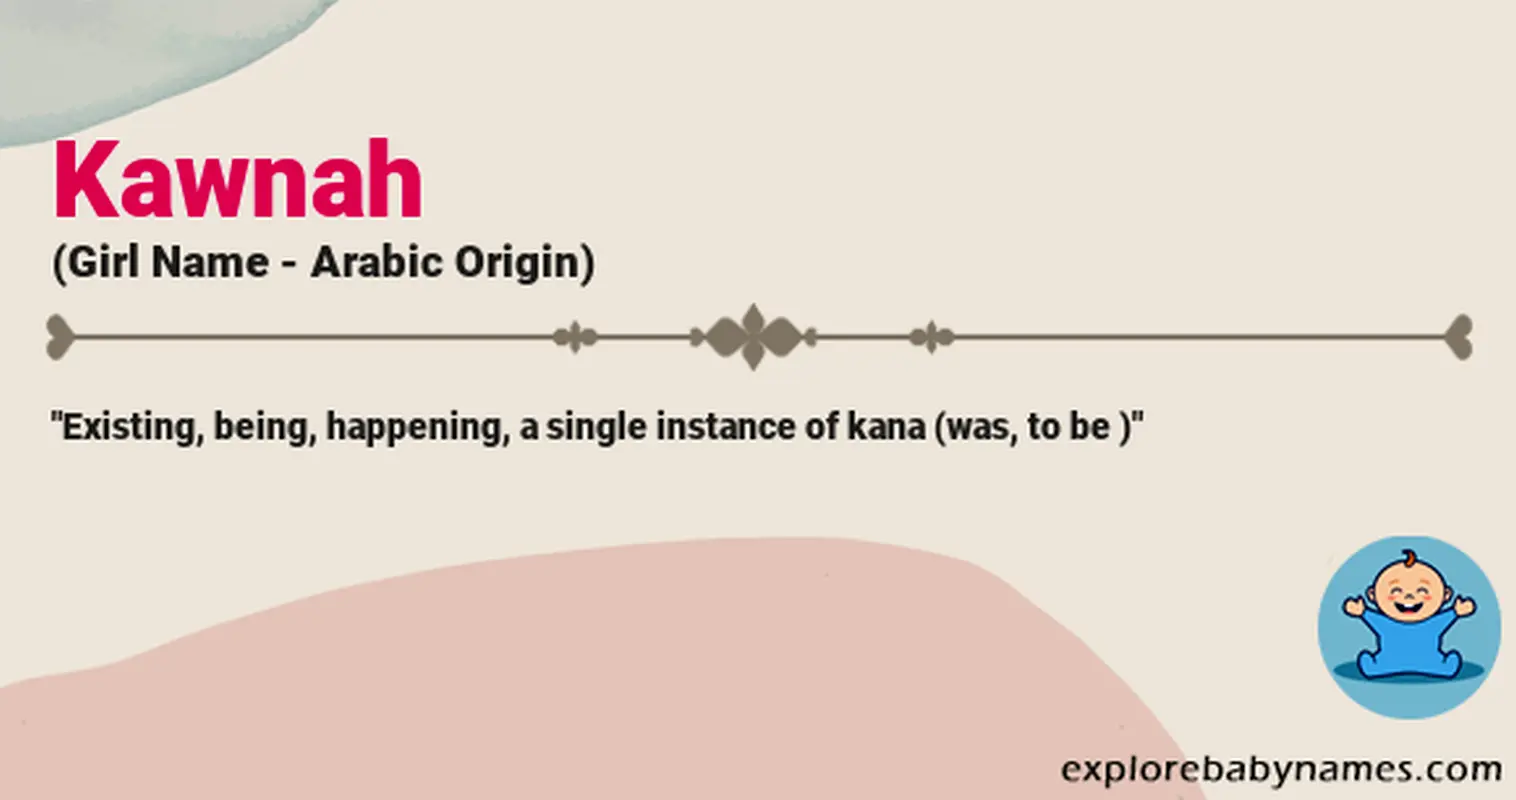 Meaning of Kawnah